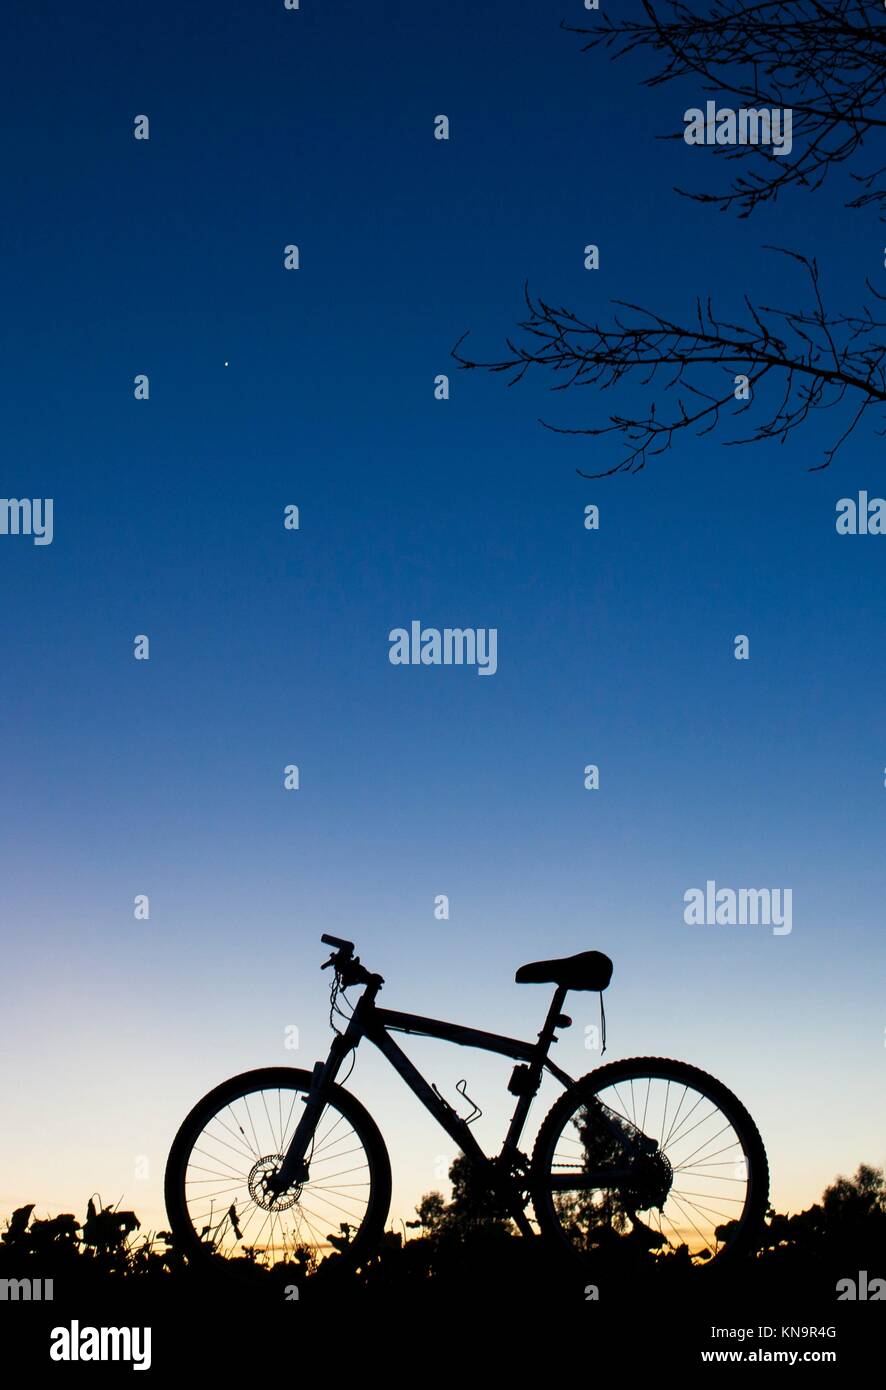 Silueta de MTB bike al atardecer bajo el árbol en el cielo azul con el planeta Venus. Foto de stock